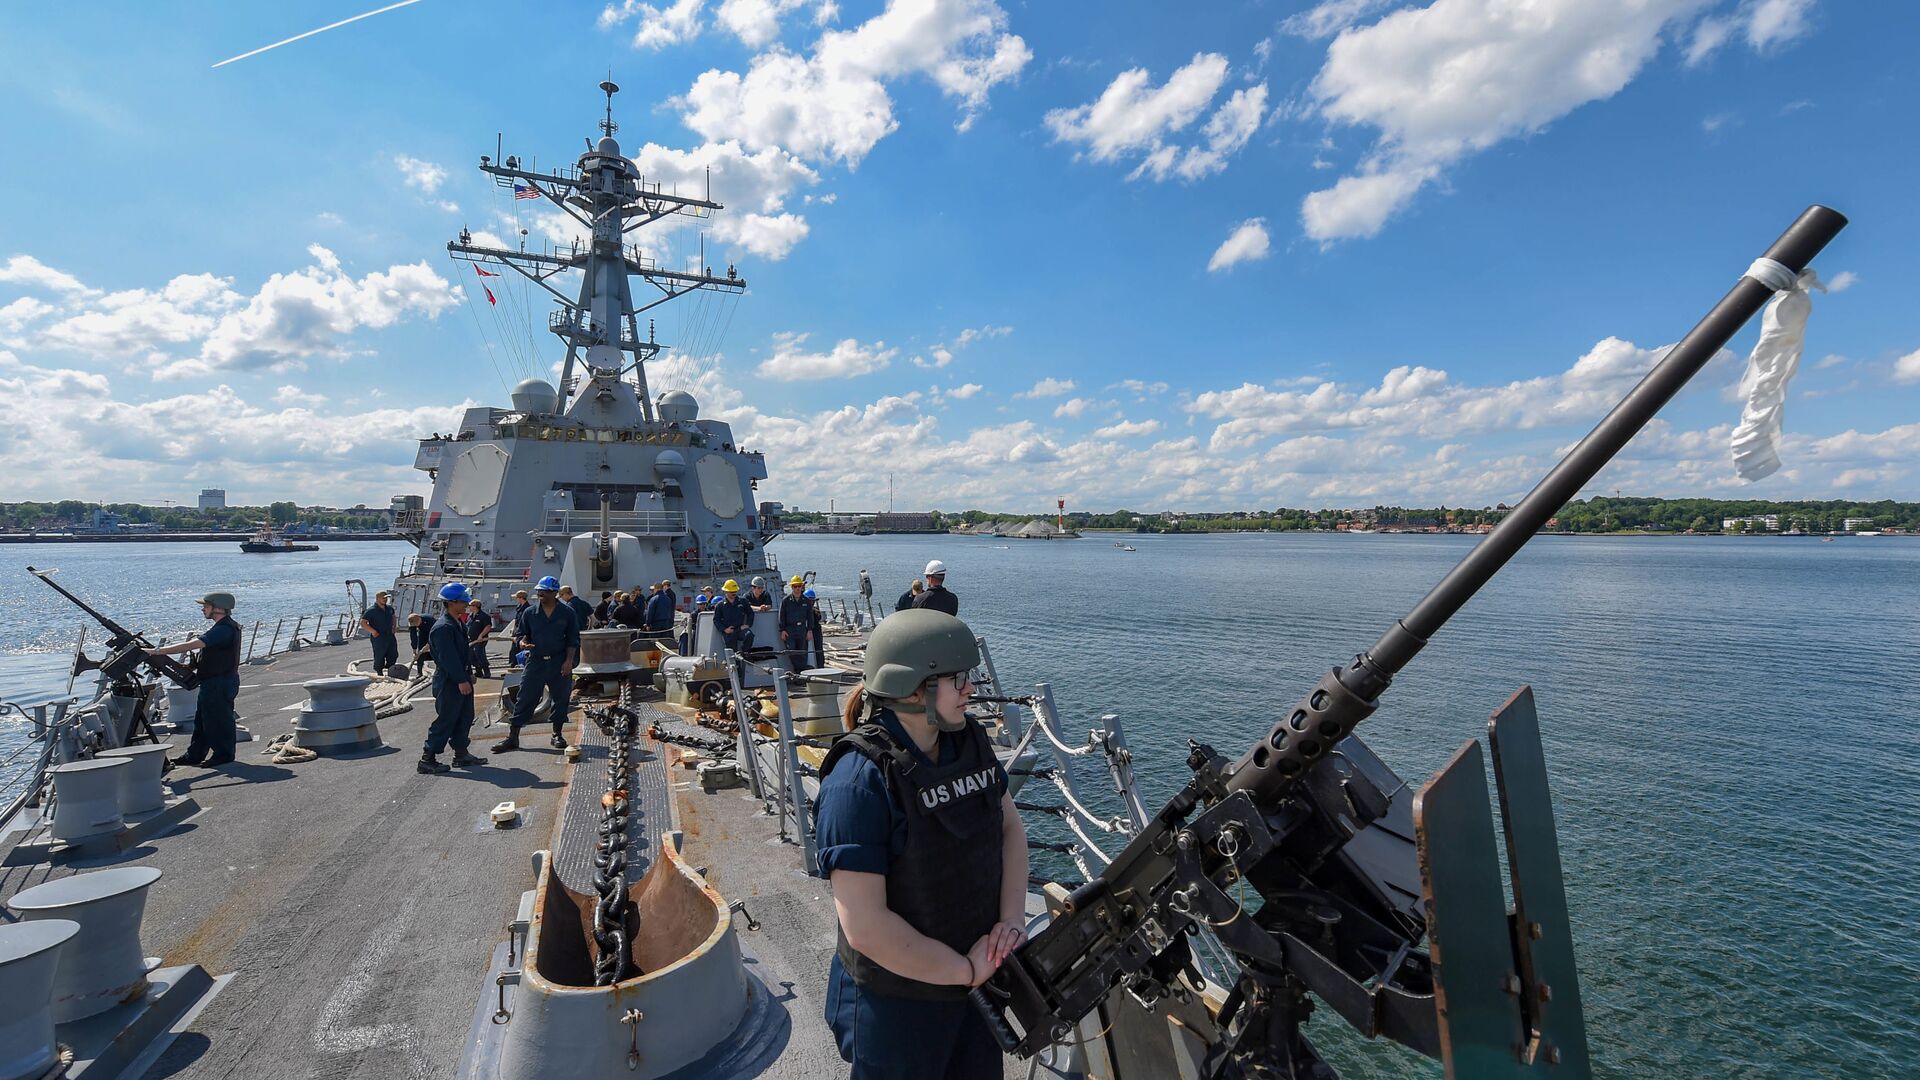 Ракетный эсминец USS Gravely отправляется из Киля (Германия) для участия в учениях НАТО BALTOPS - 2019, 9 июня 2019 года - Sputnik Lietuva, 1920, 08.06.2021